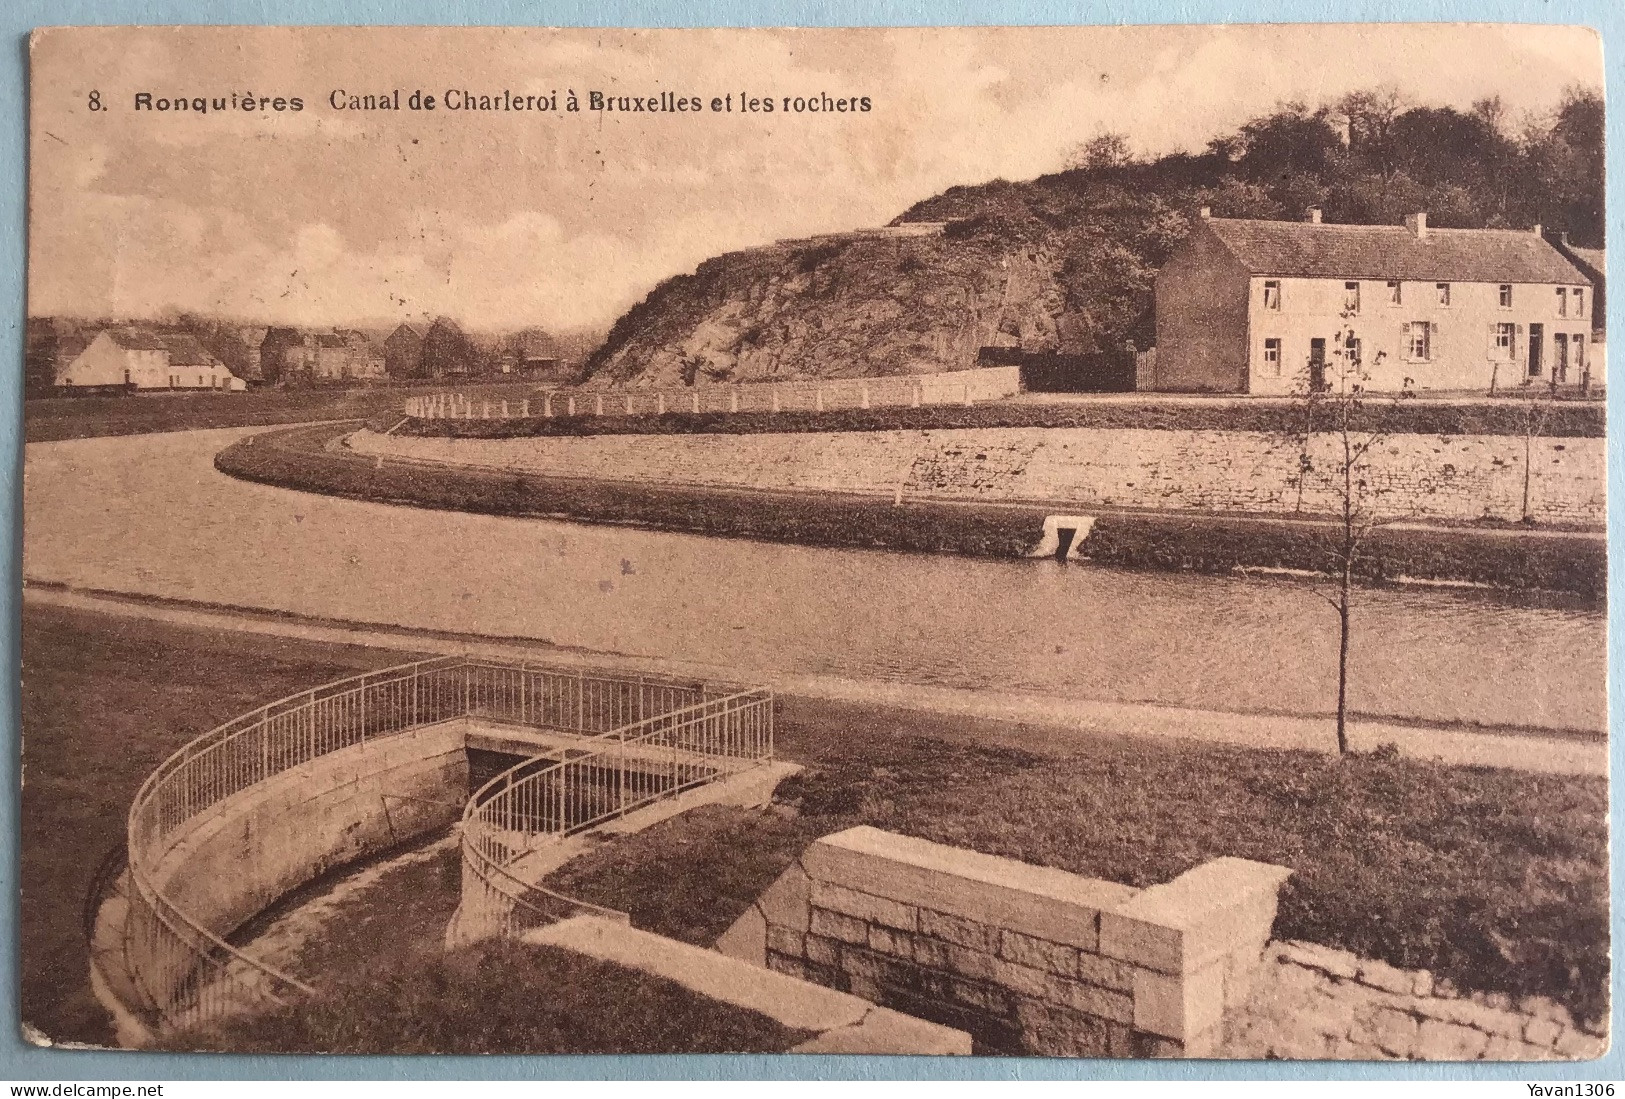 Ronquieres   1928 Canal De Charleroi A Bruxelles Et Les Rochers - Braine-le-Comte